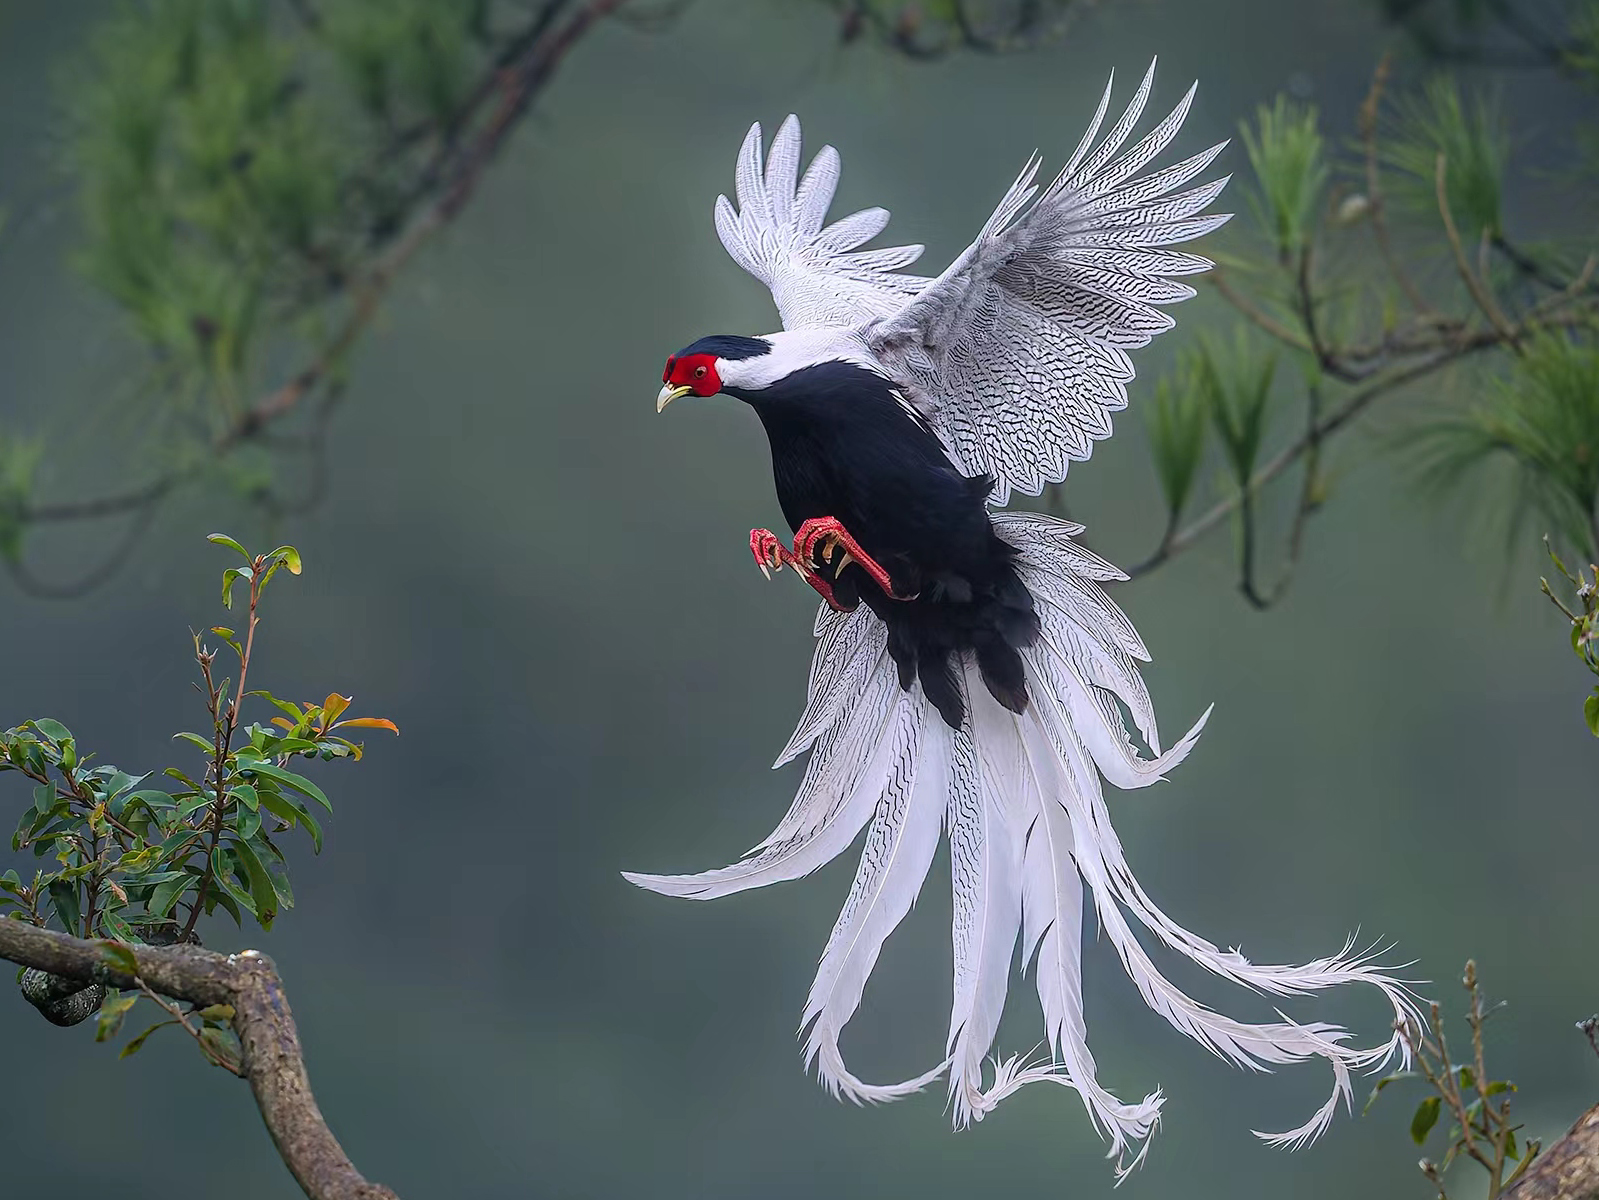 El Faisán Plateado, también conocido como Fénix Blanco en el sudeste asiático, es un pájaro impresionante por su belleza. Descubre qué hace al Faisán Plateado tan especial y explora su maravillosa apariencia con plumas plateadas y una larga cola esbelta.